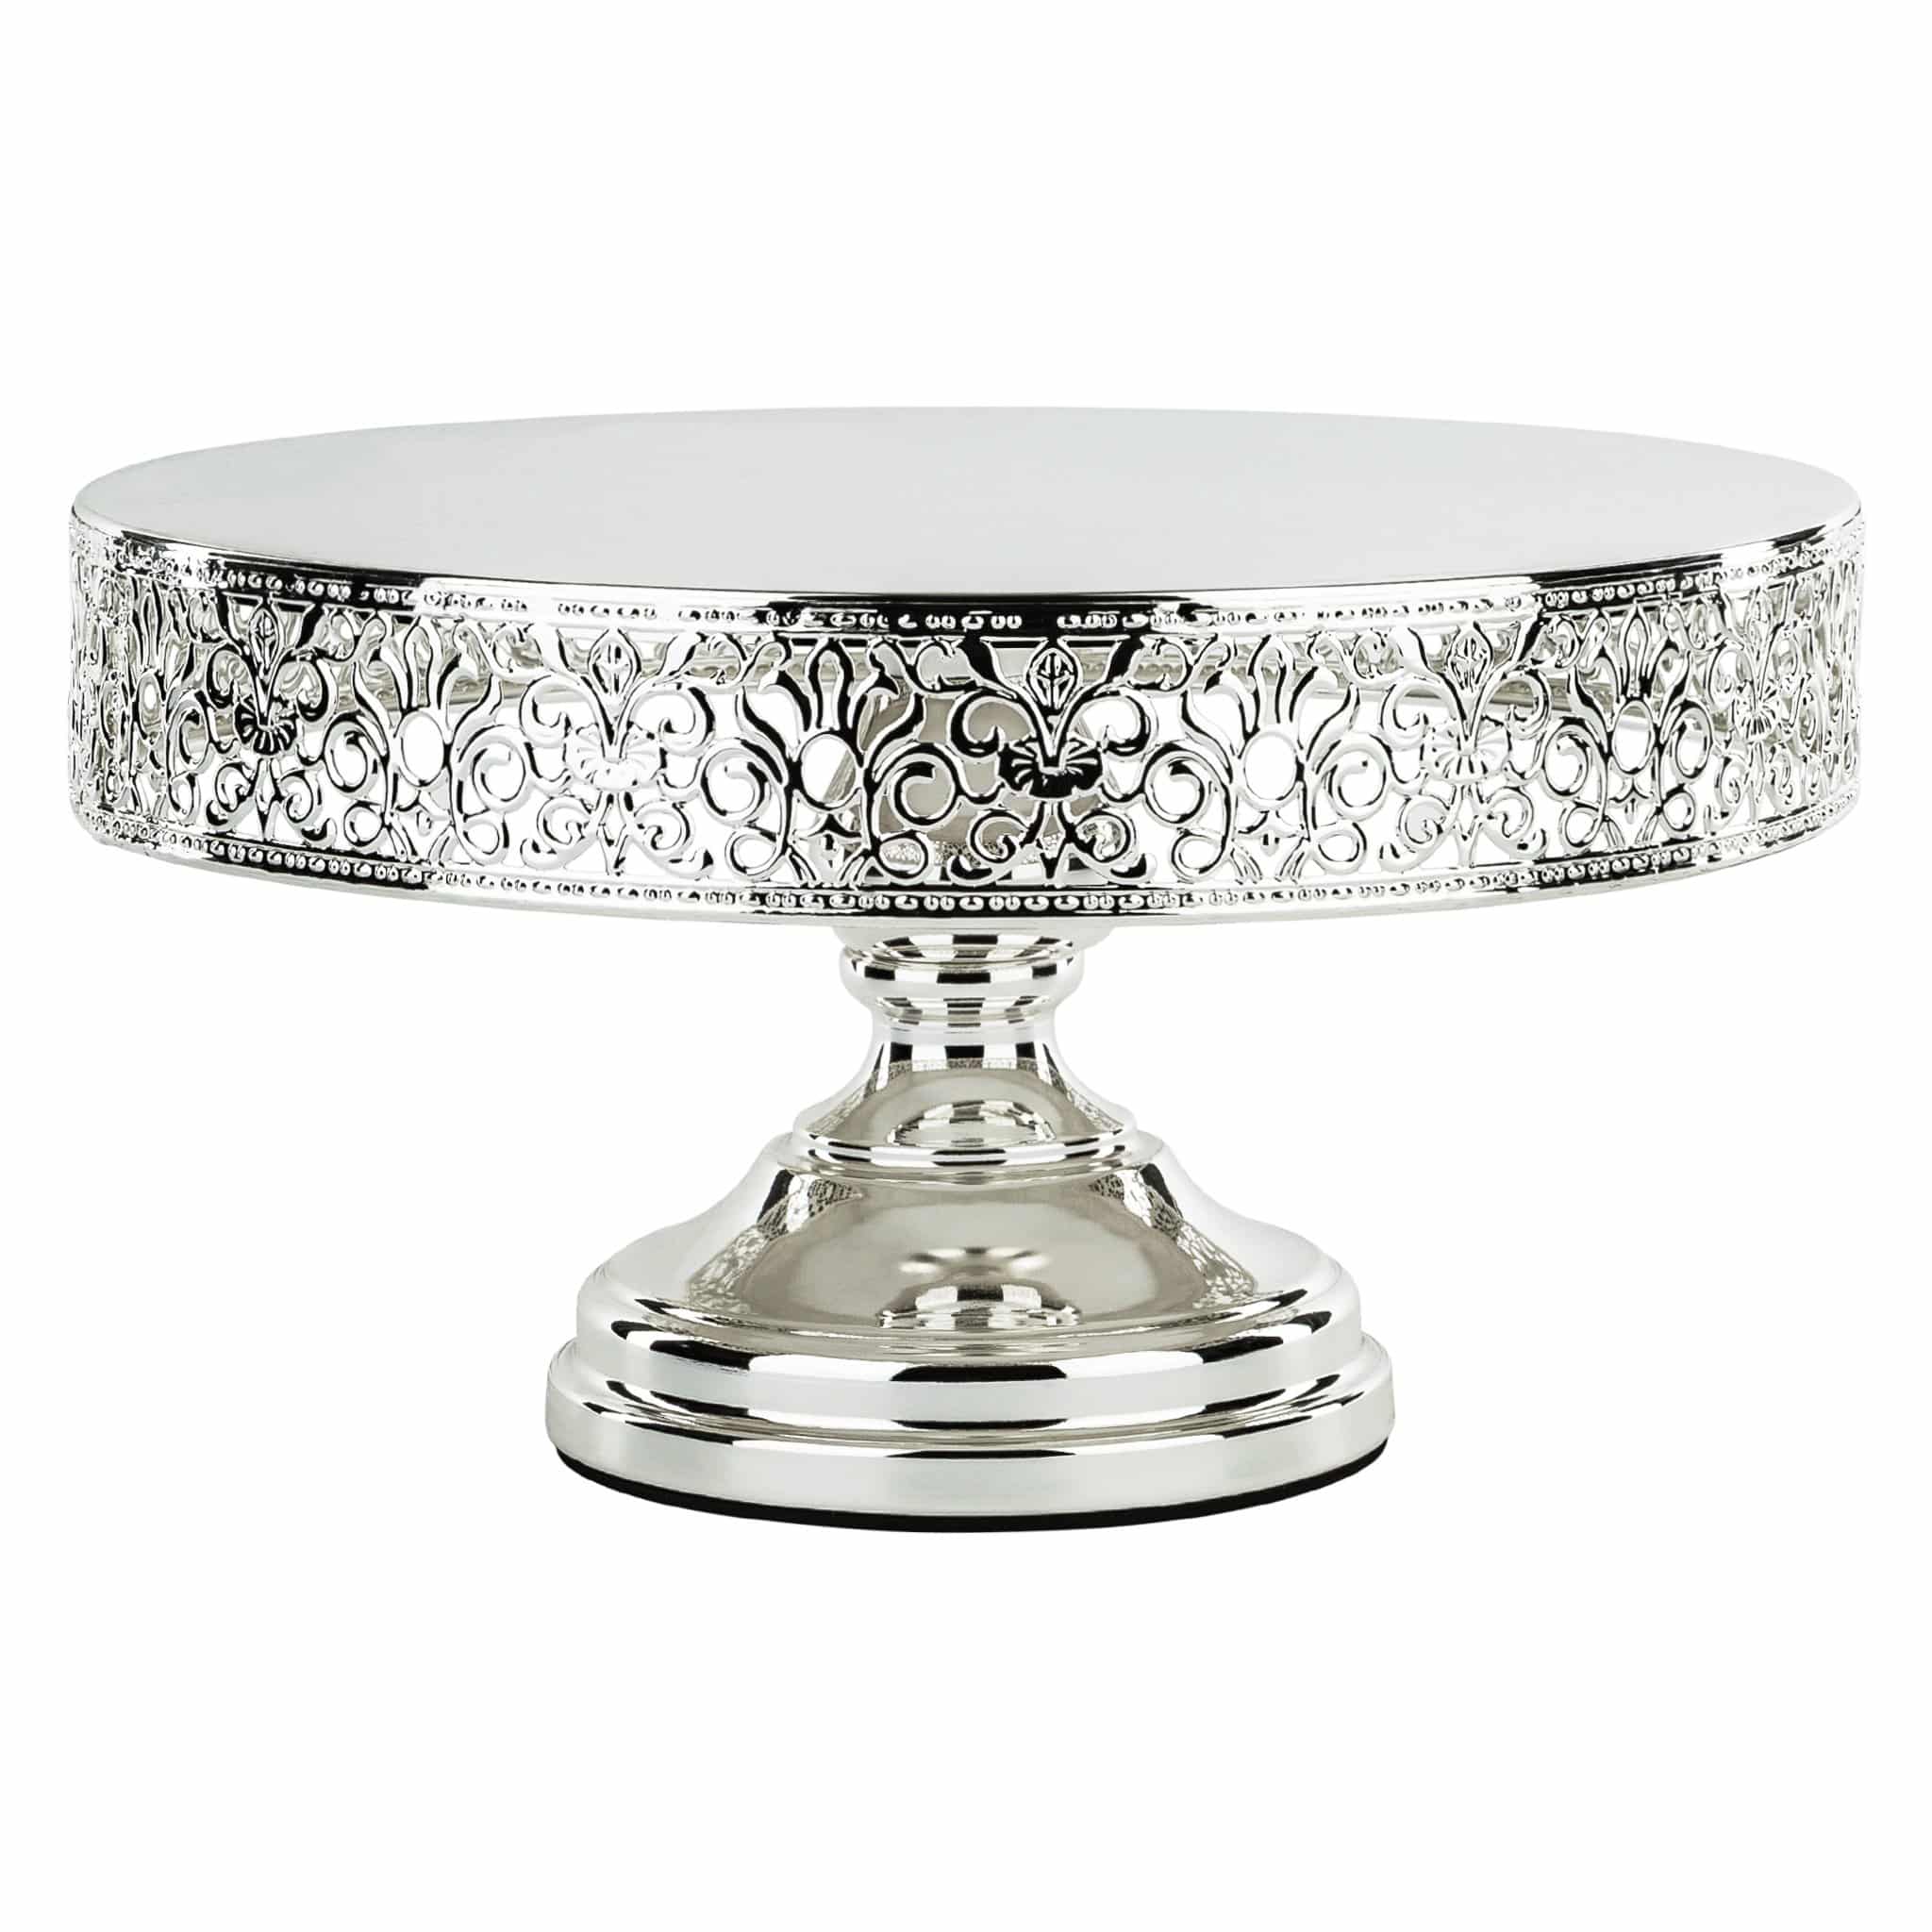 Amalfi Décor 12 Inch Round Shiny Metallic Wedding Cake Stand (Silver ...